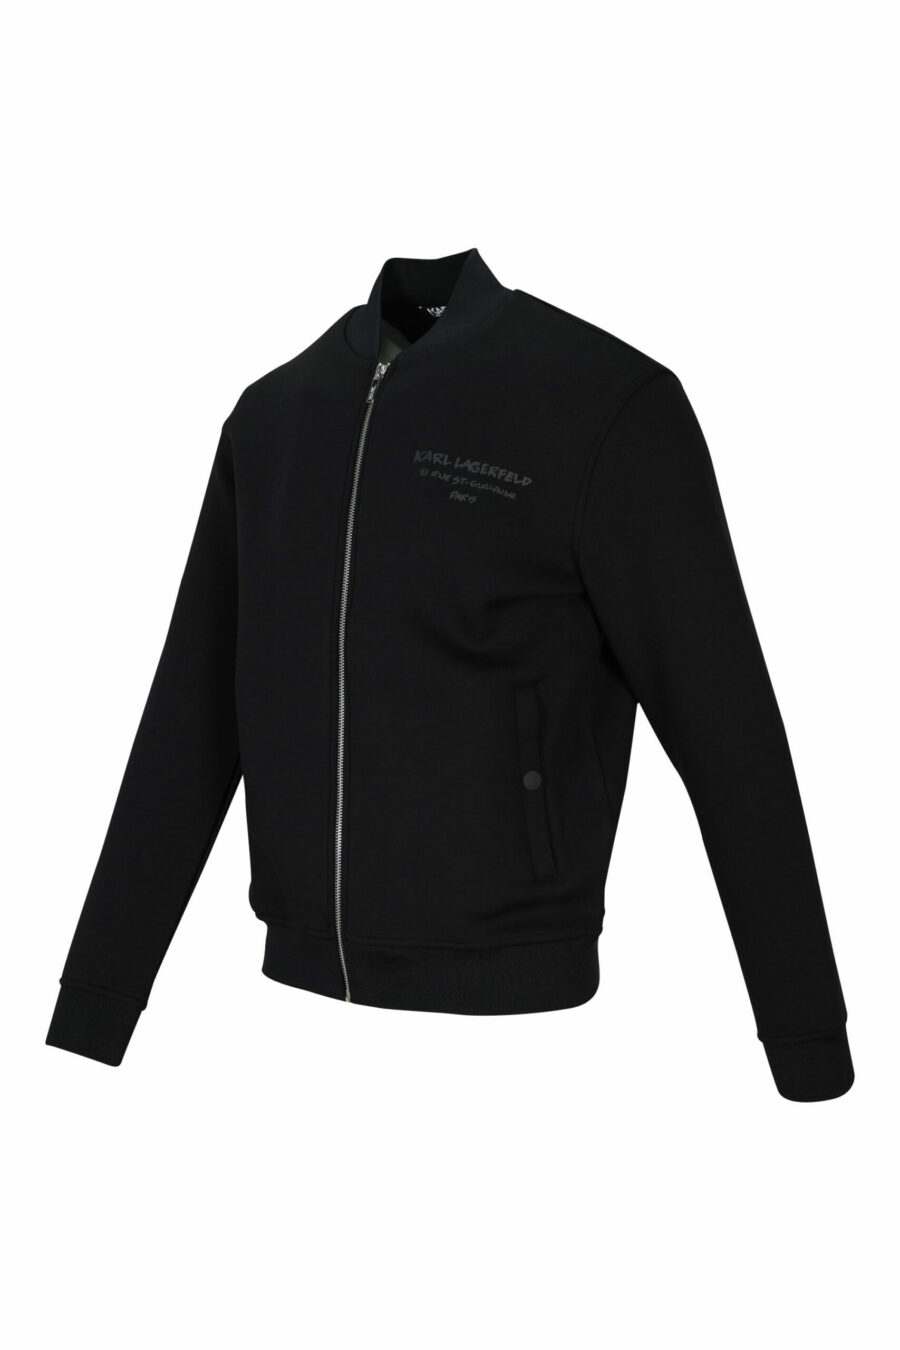 Schwarzes Sweatshirt mit Reißverschluss und Minilogue - 4062226395656 1 skaliert